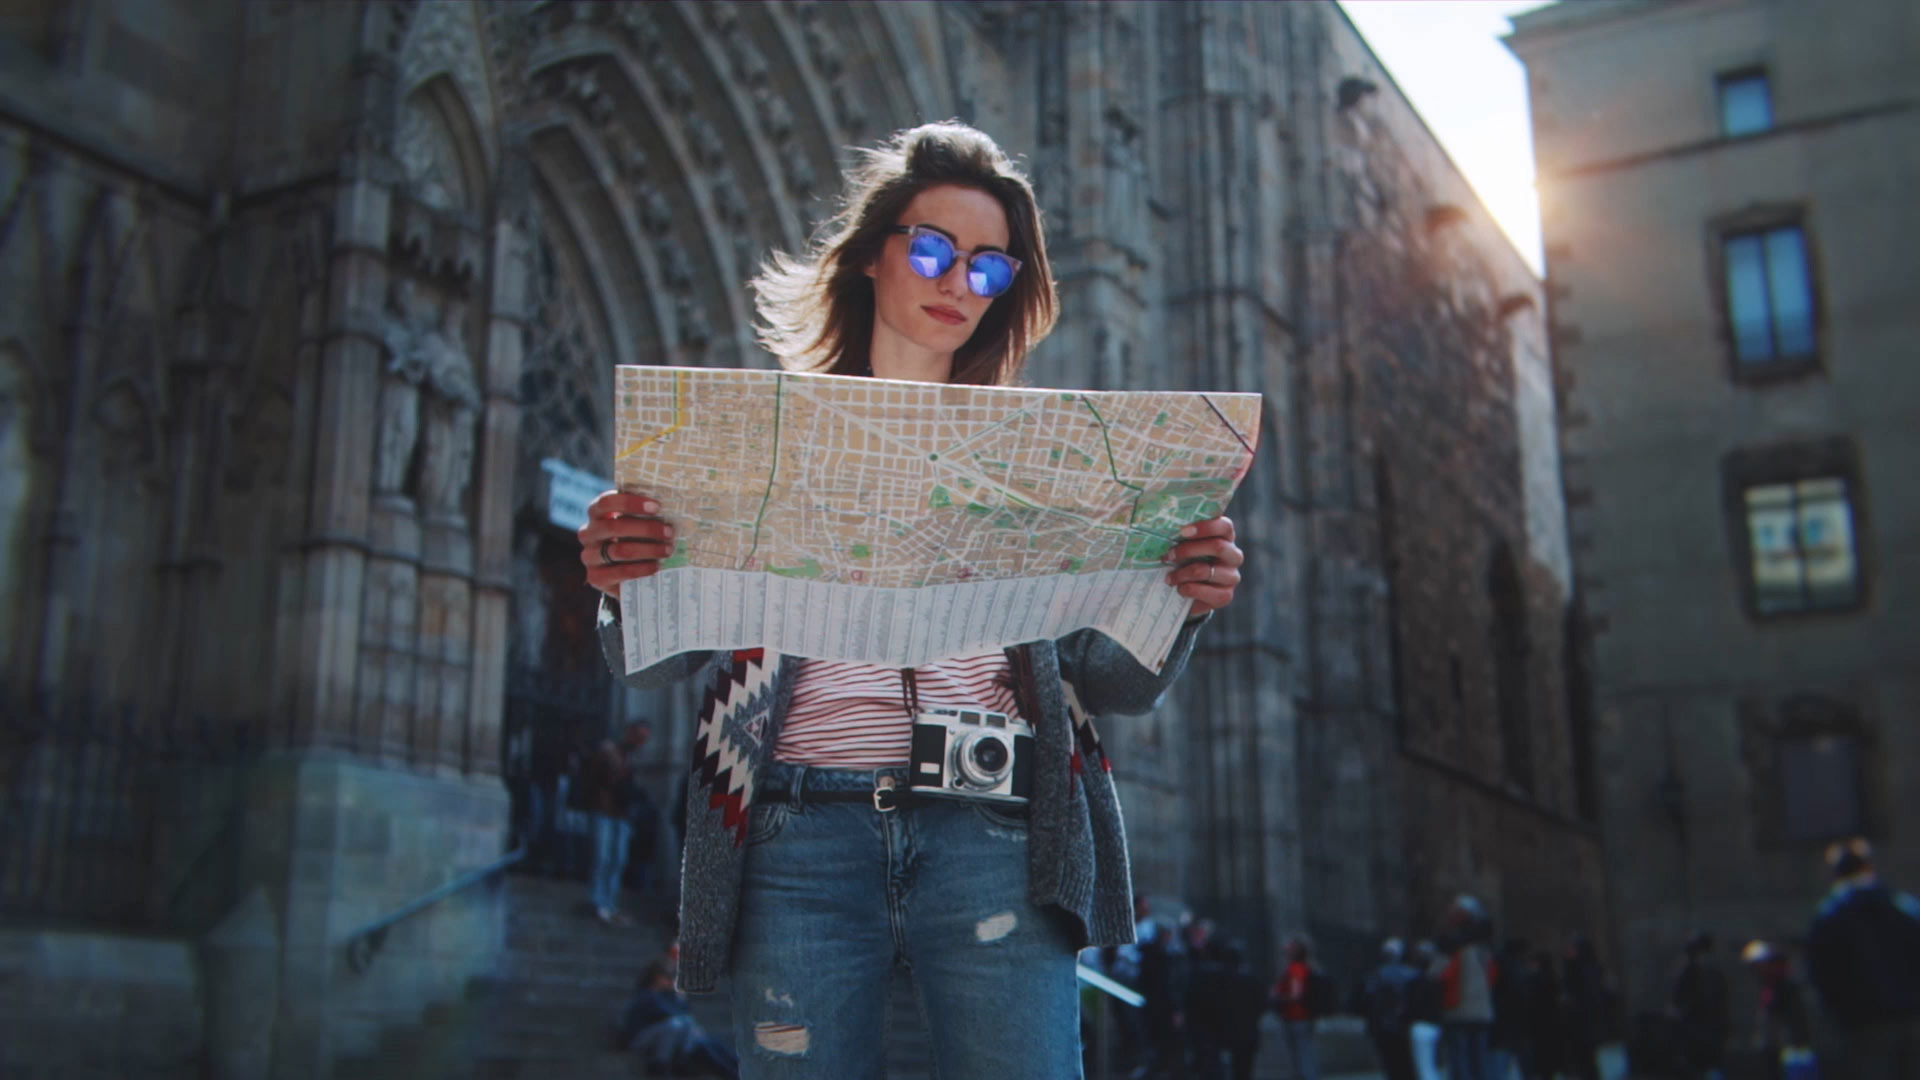 Turist i Barcelona, der kigger på et kort med Barcelonas katedral i baggrunden.